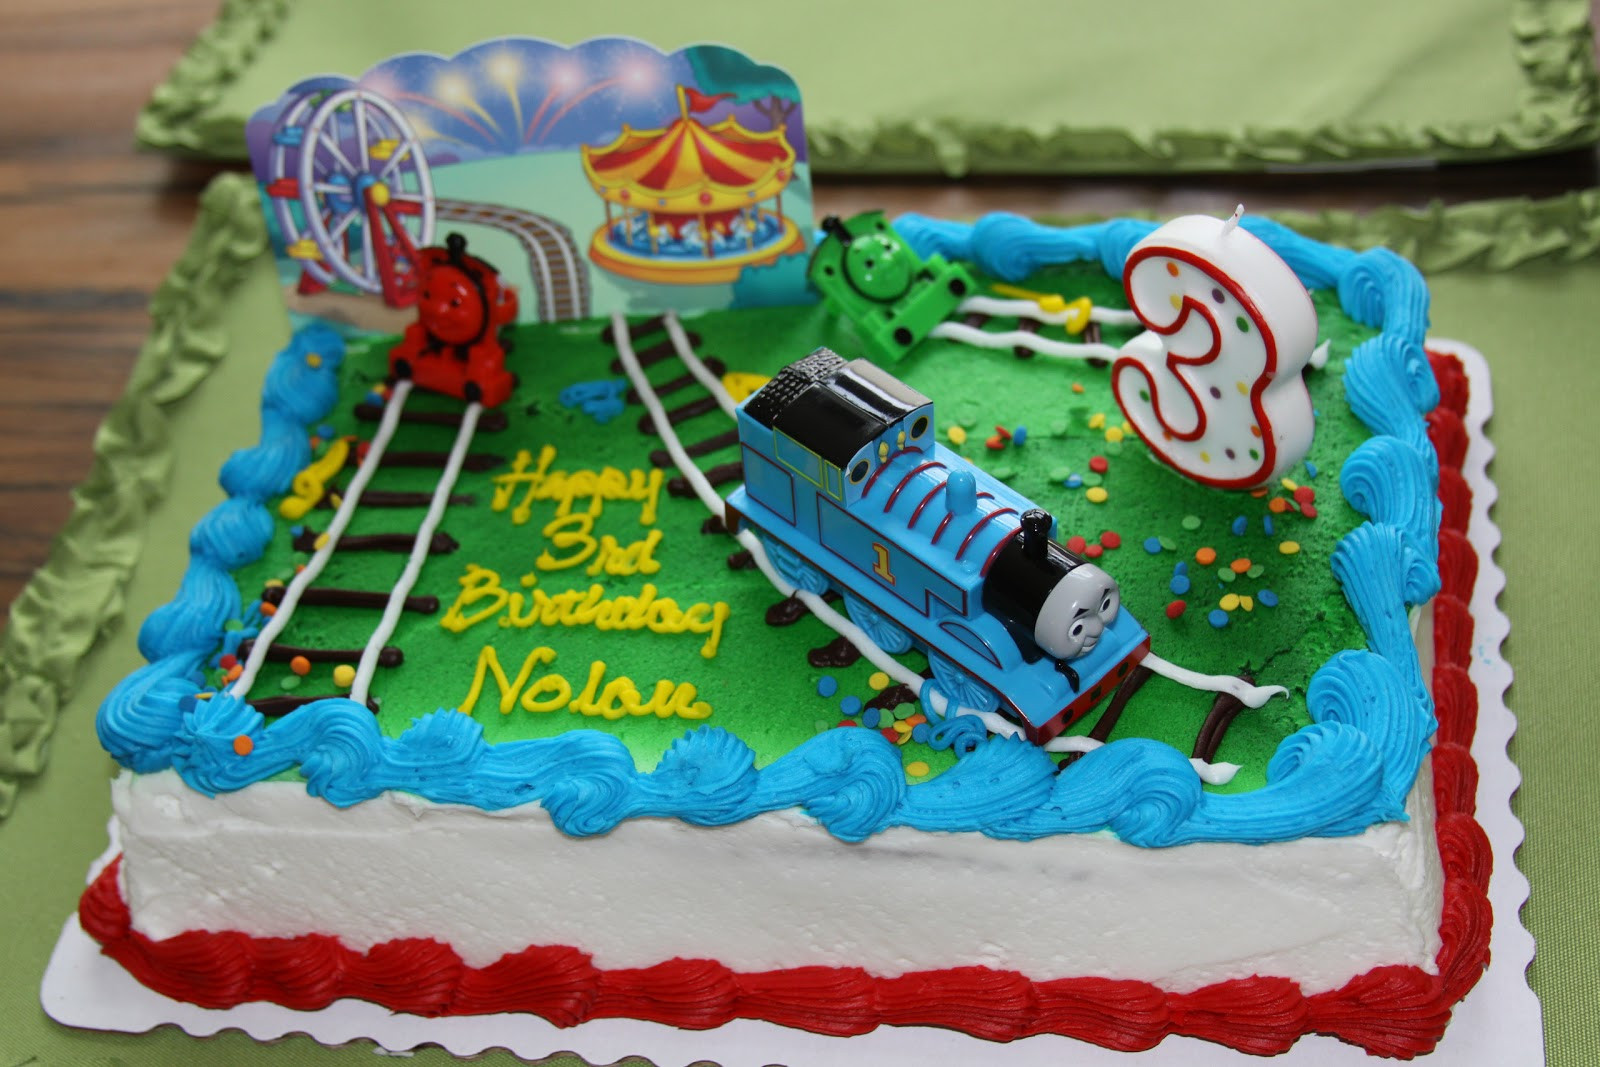 Thomas Train Birthday Cake
 Hearts and Hands A Thomas the Train Birthday Party